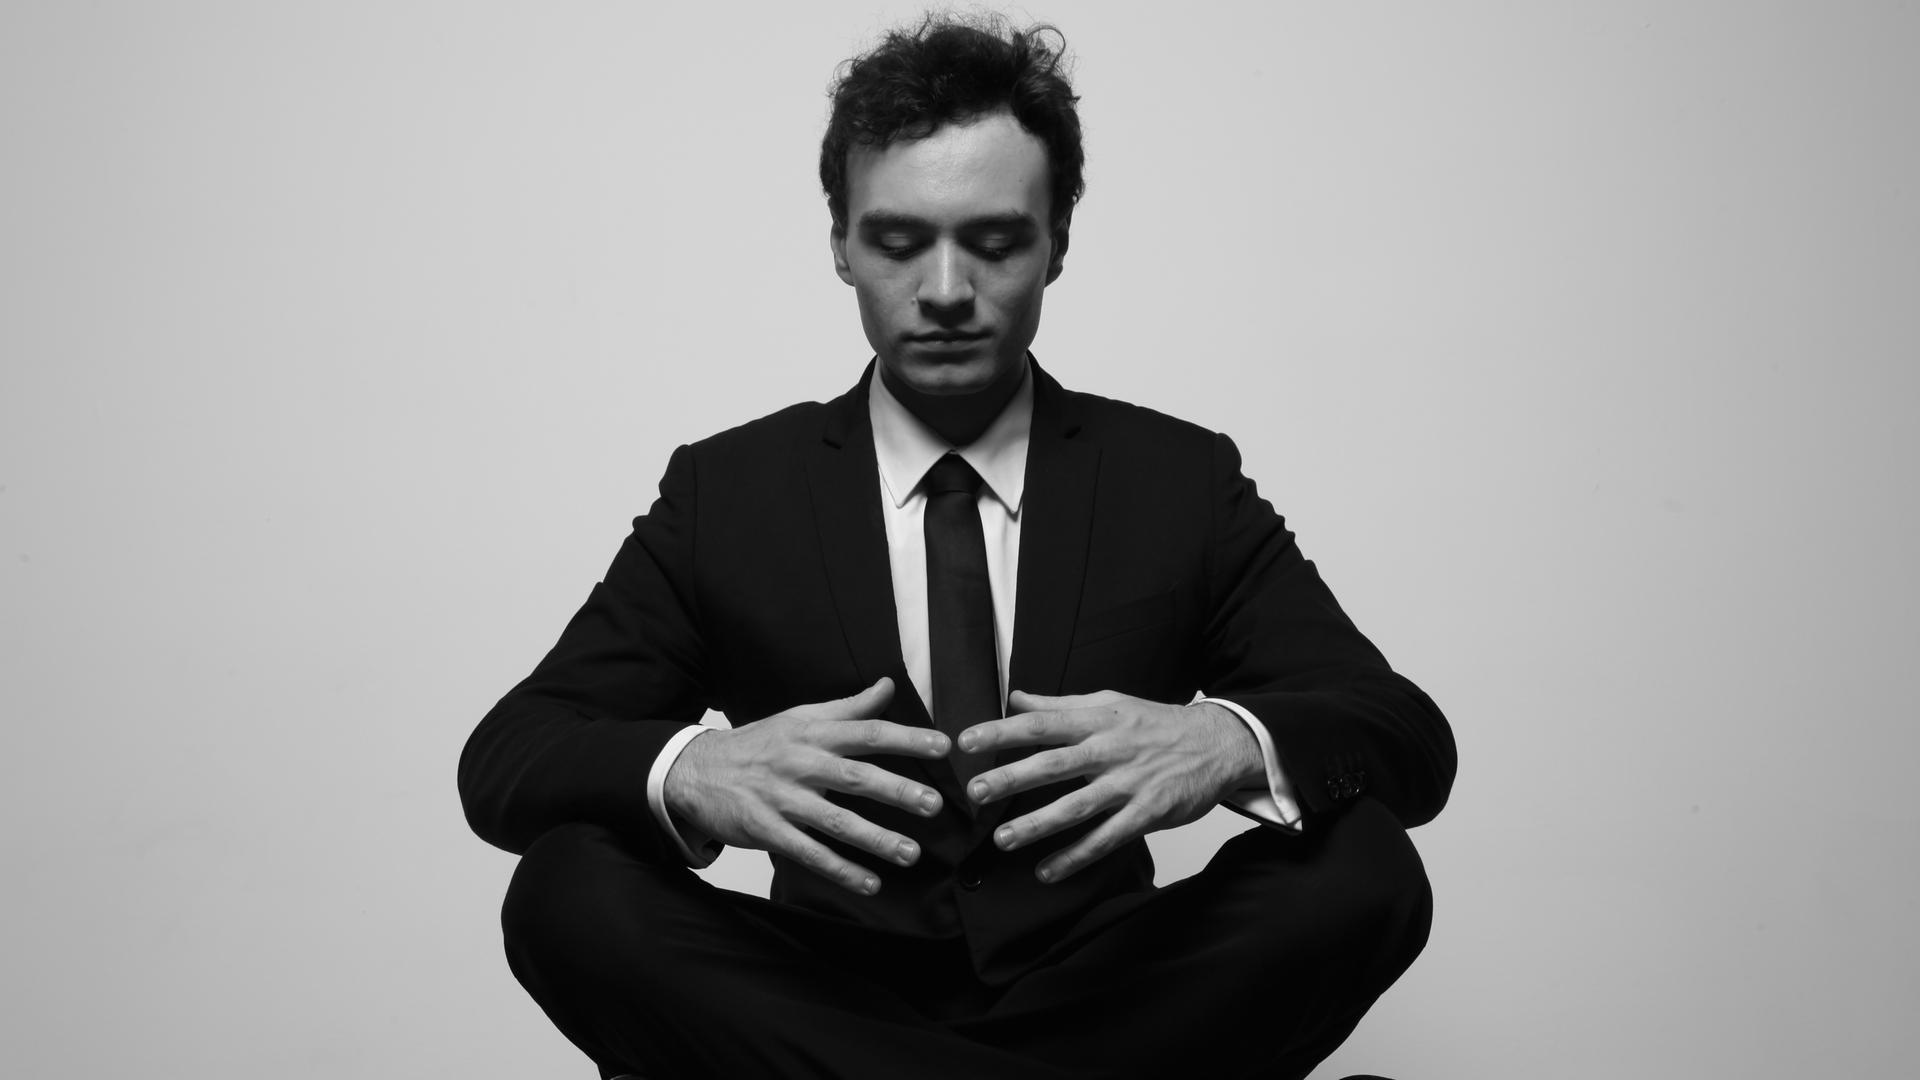 Ein junger Mann sitzt im Schneidersitz und blickt konzentriert auf seine Hände. Er trägt einen schwarzen Anzug. Es ist der französische Pianist Jonathan Fournel.